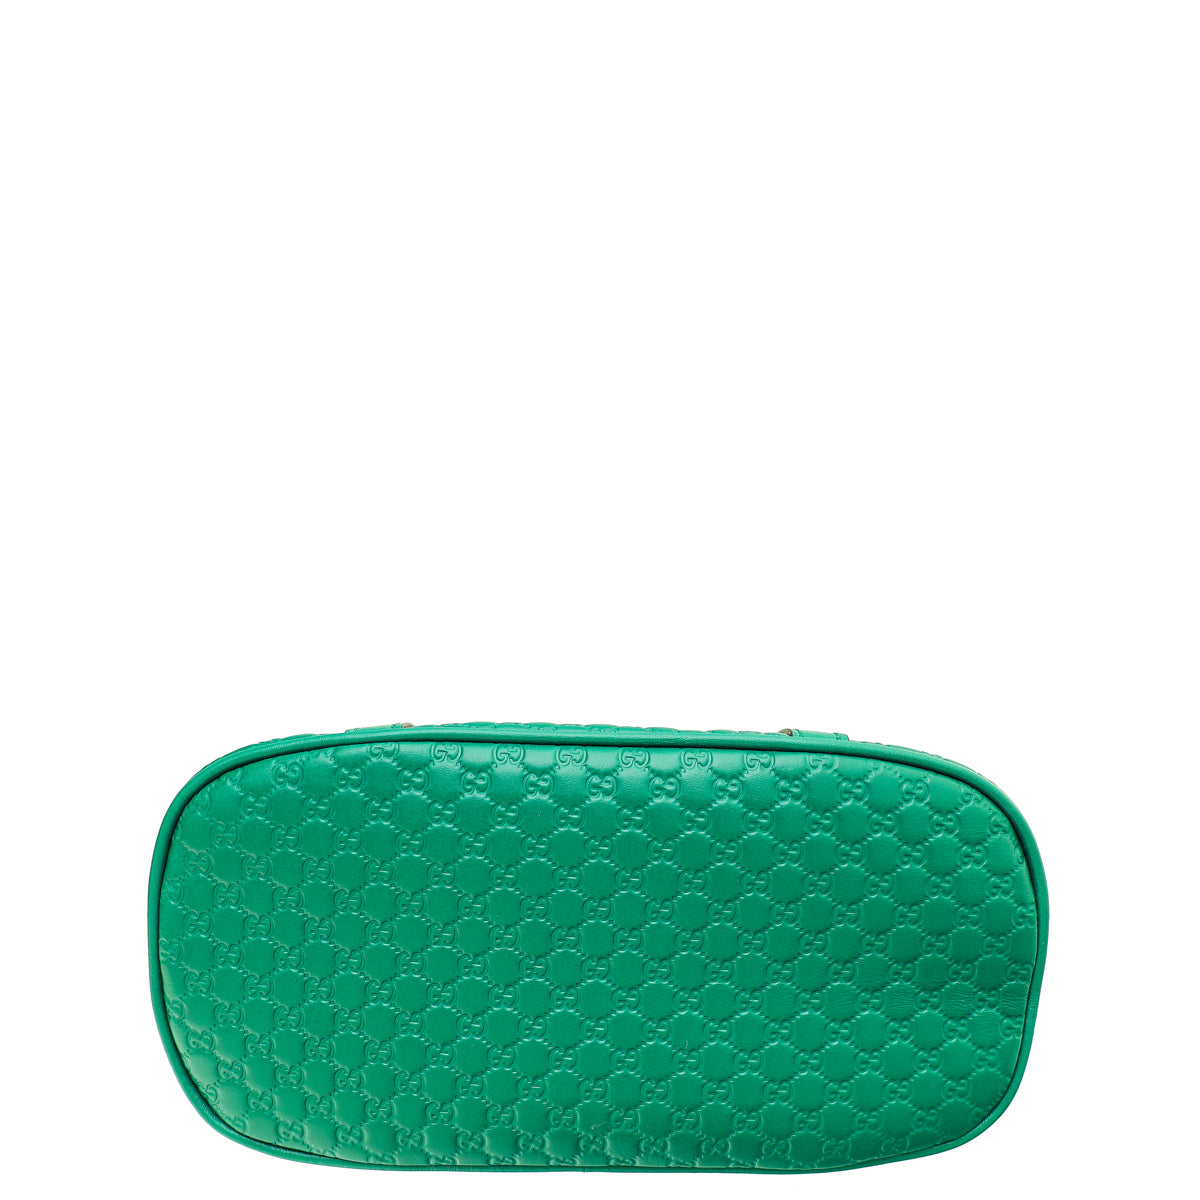 Gucci Green GG Microguccissima Dome Satchel Mini Bag